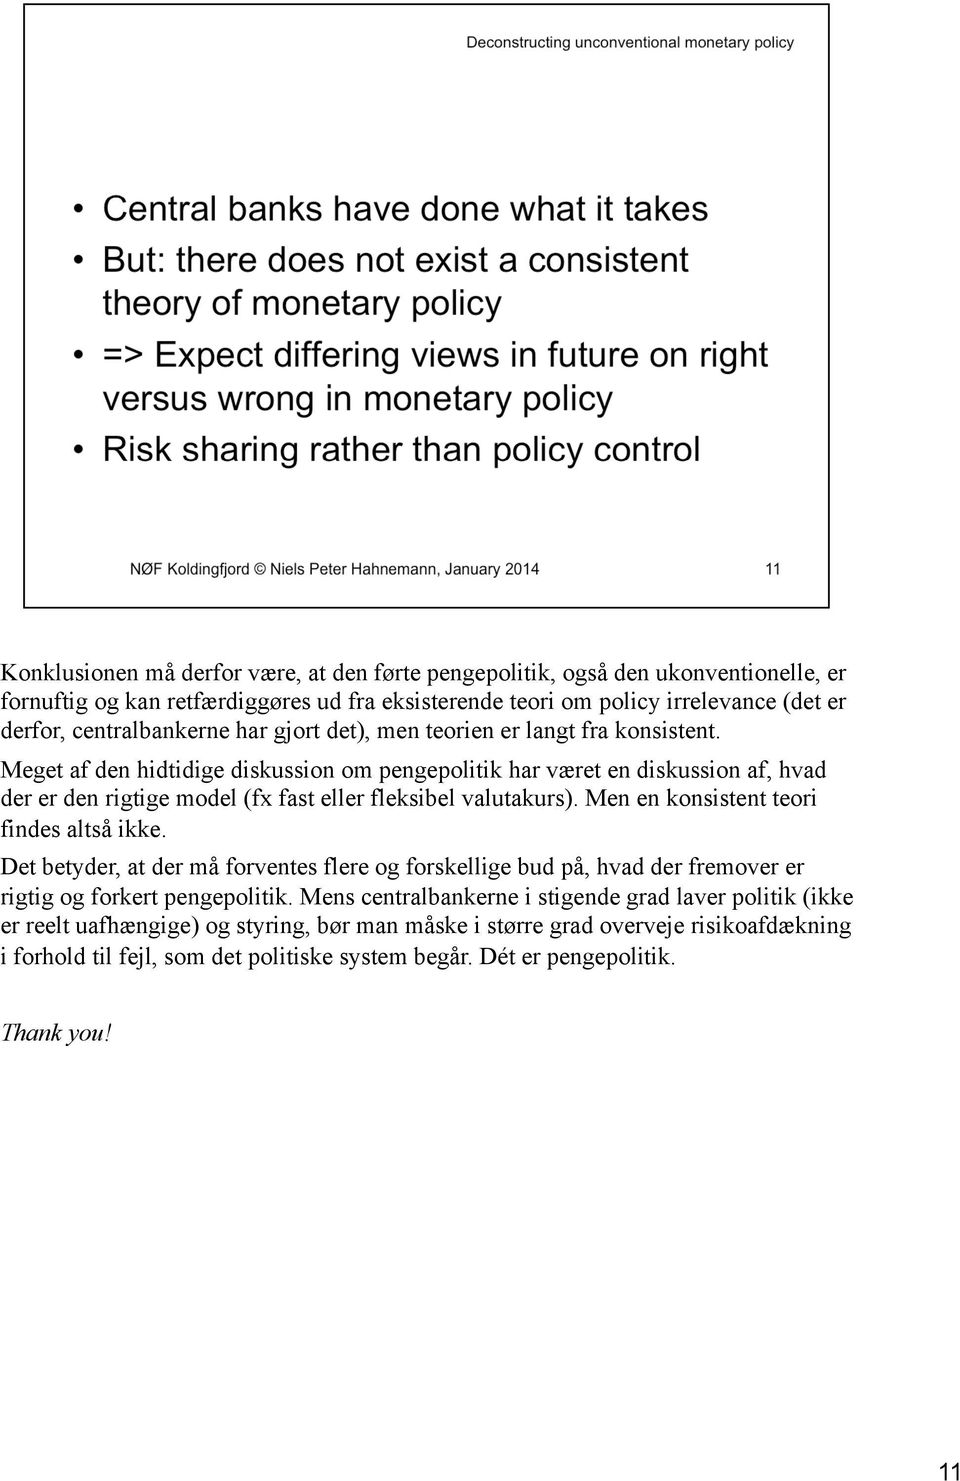 Meget af den hidtidige diskussion om pengepolitik har været en diskussion af, hvad der er den rigtige model (fx fast eller fleksibel valutakurs). Men en konsistent teori findes altså ikke.